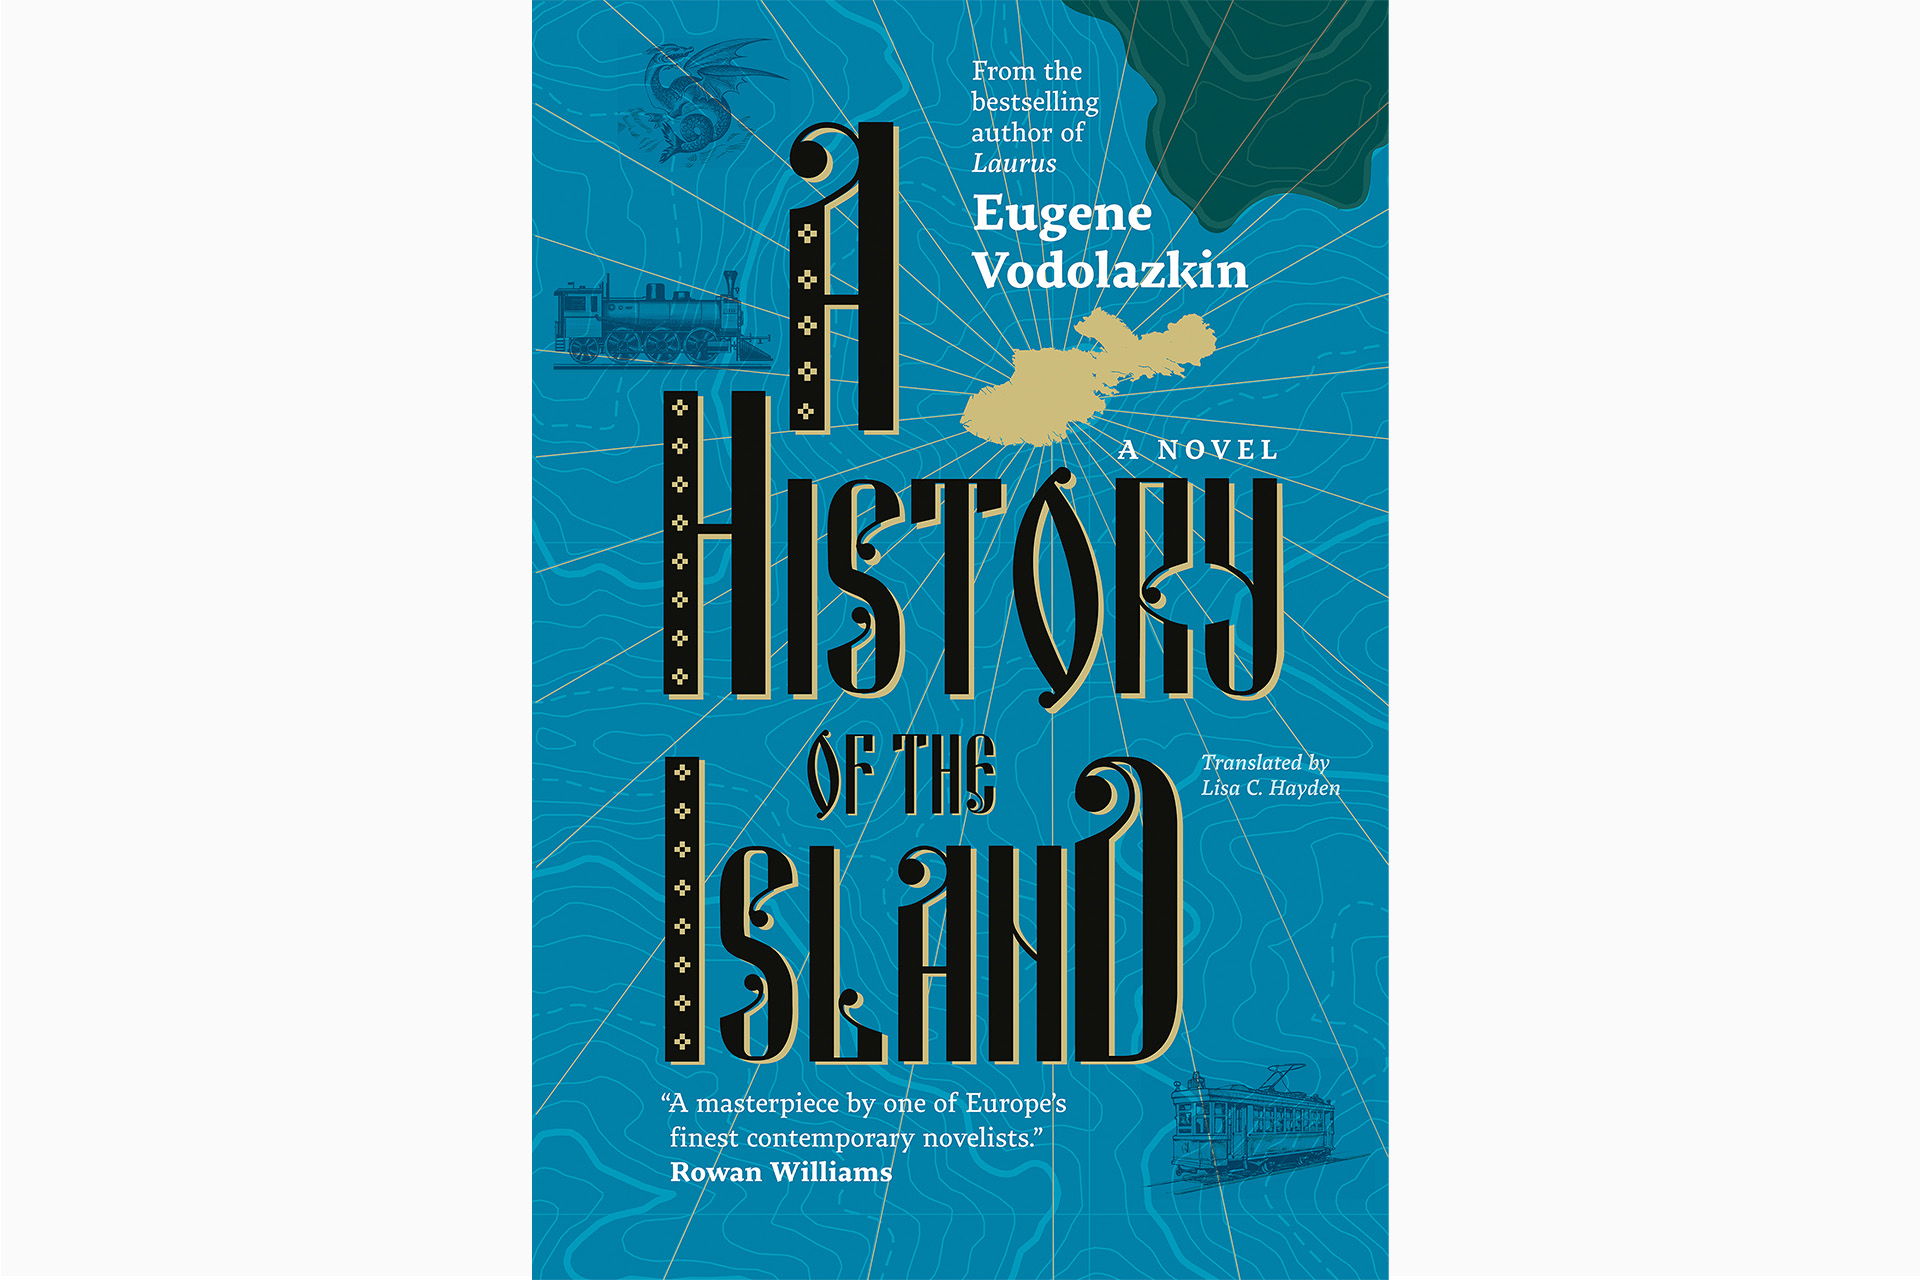 Обложка английского перевода «Оправдания острова» Евгения Водолазкина